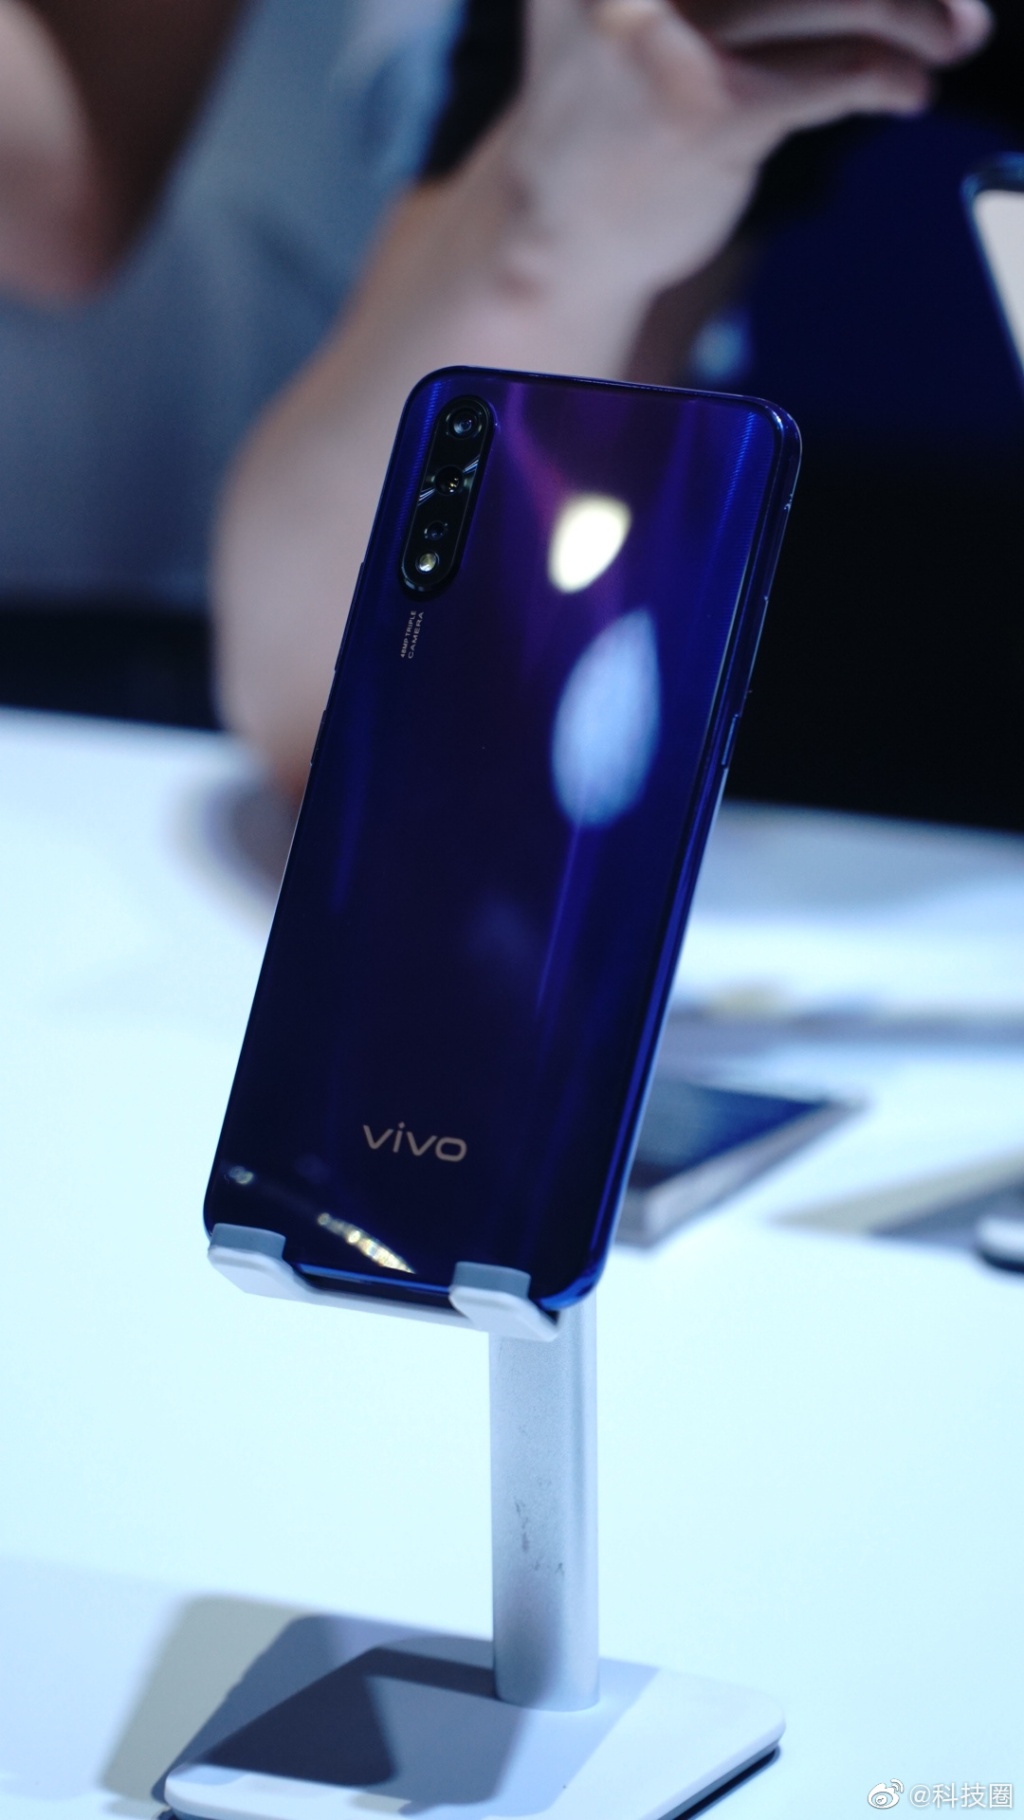 Vivo Z5 chính thức ra mắt với Snapdragon 712,
màn hình giọt nước 6.39 inch, 3 camera chính, giá từ 5.3
triệu đồng